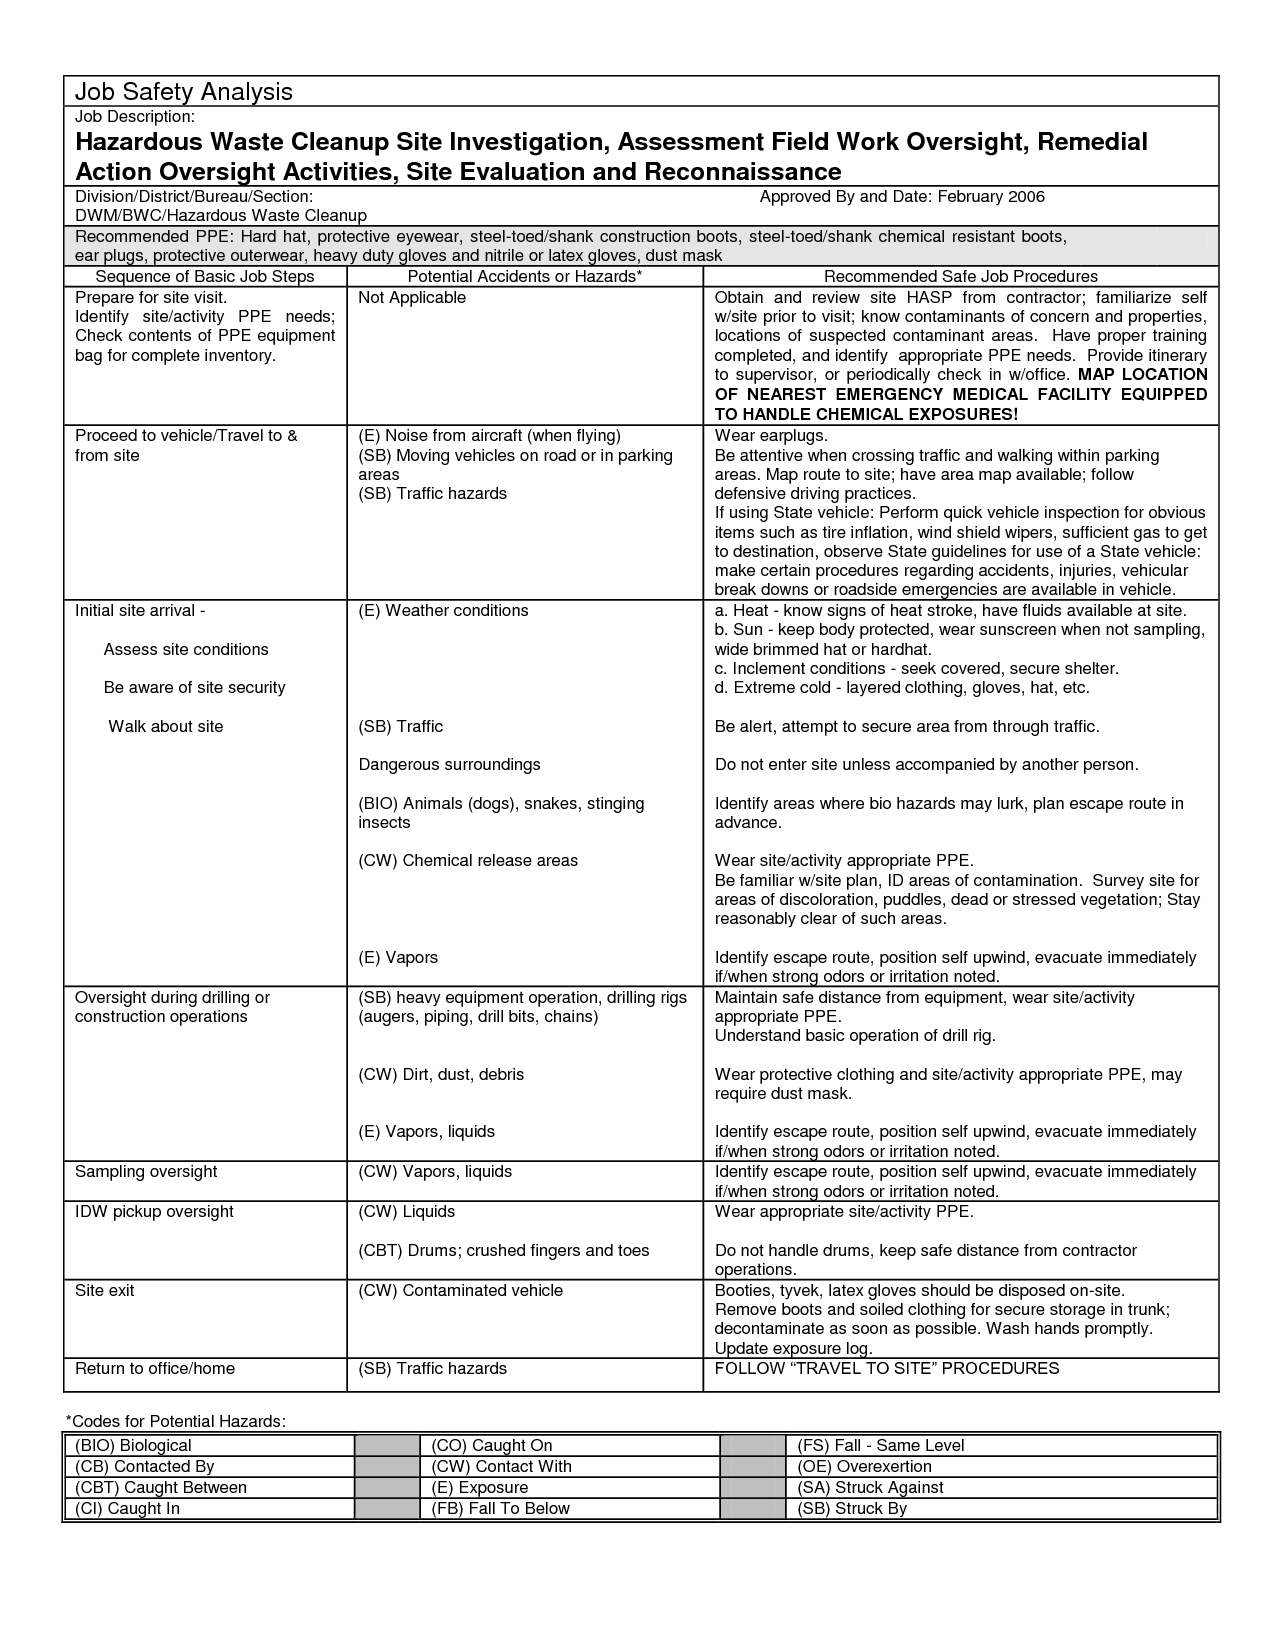 Job Analysis Worksheet  Free Worksheets Library  Download And Print Regarding Hazard Analysis Worksheet Examples